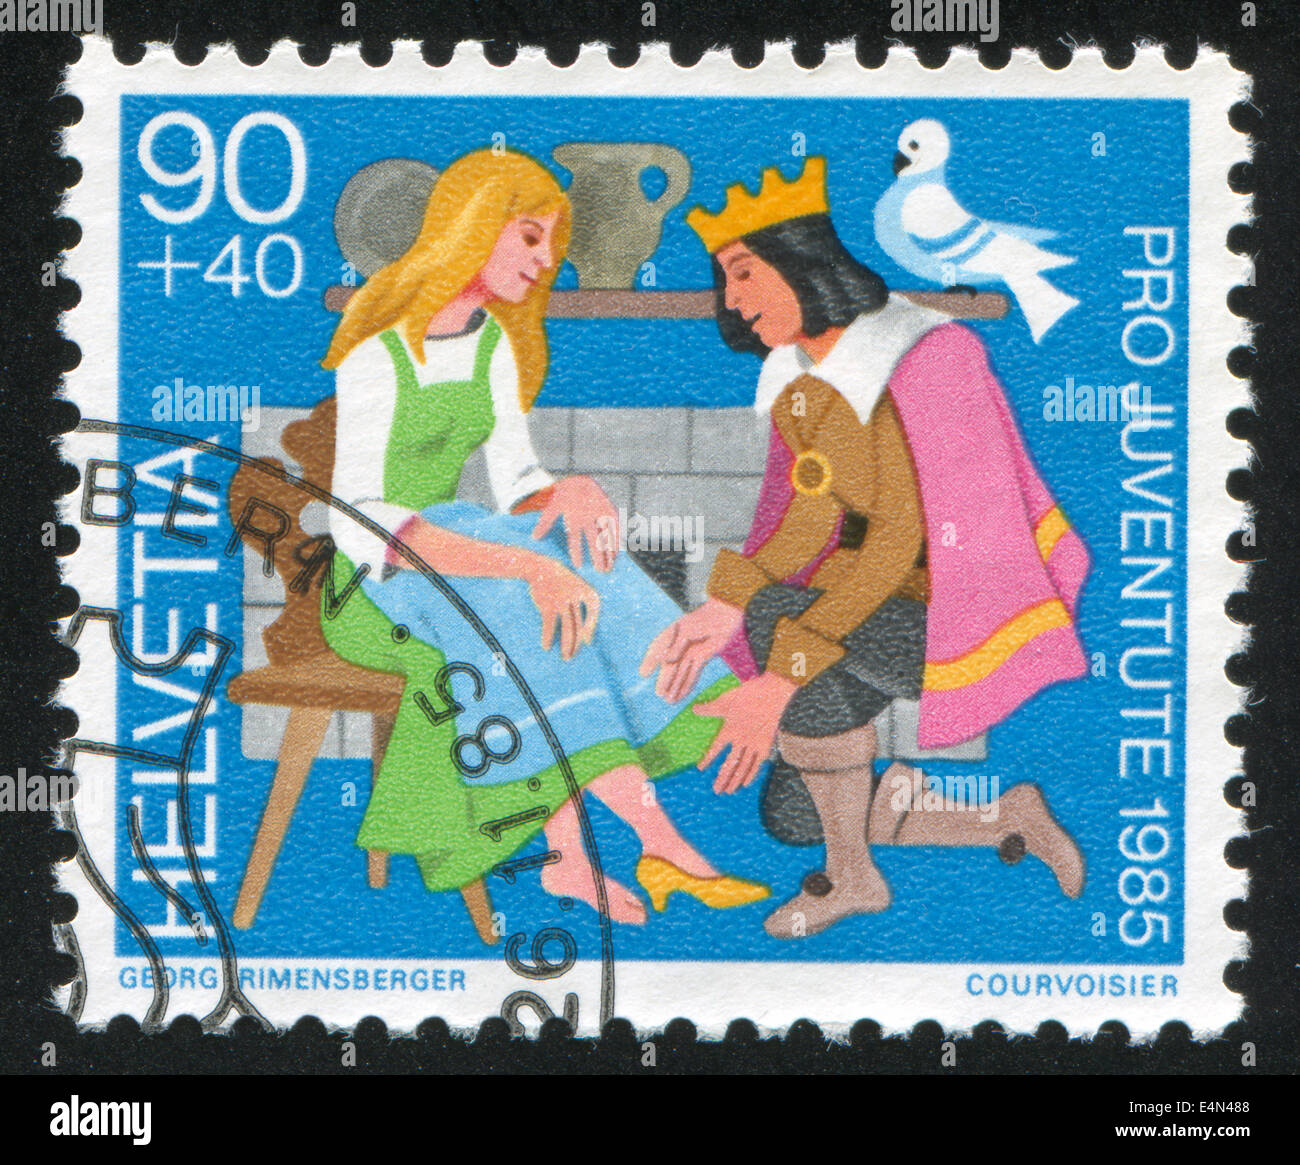 Cinderella Stamp Stockfotos und -bilder Kaufen - Alamy